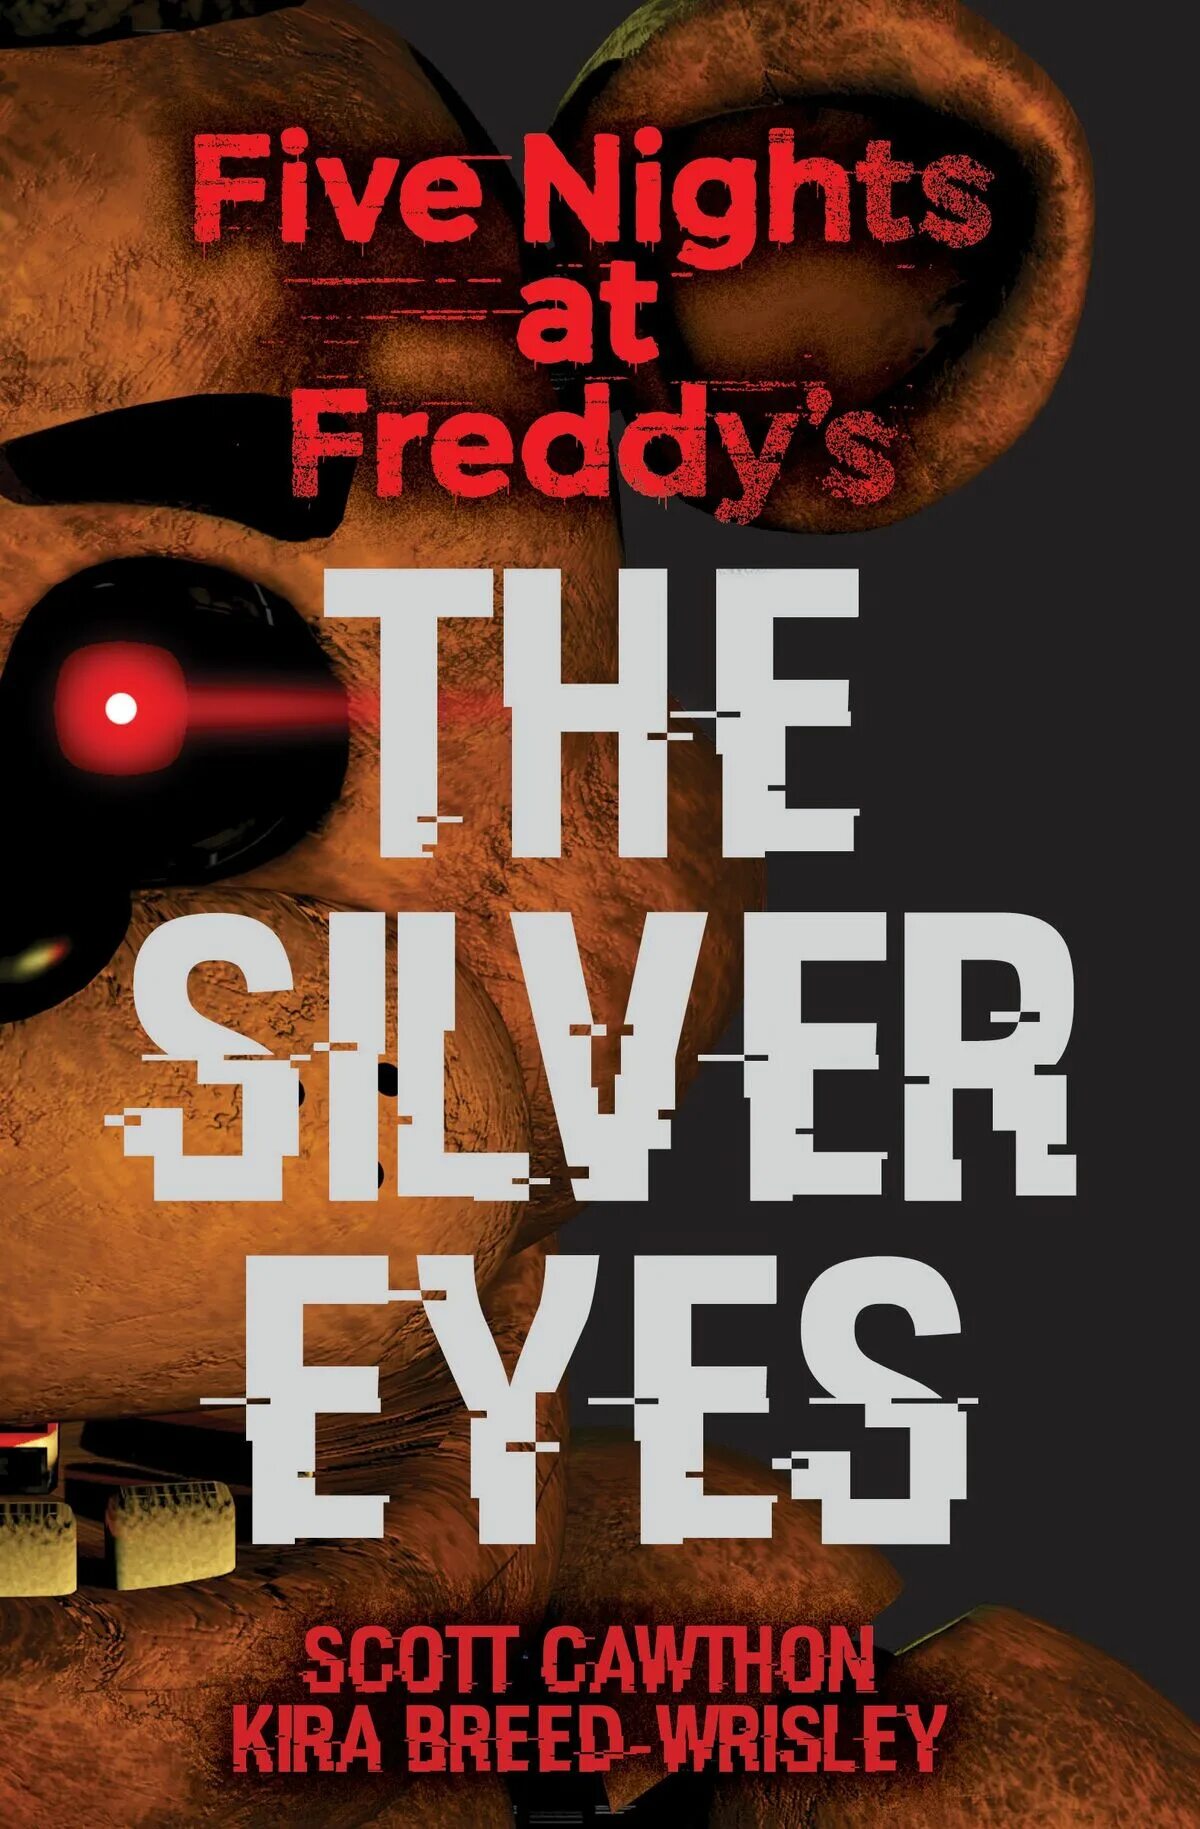 Серебряная книга фнаф. Скотт Коутон серебряные глаза. Серебряные глаза книга Скотт Коутон. Книга Five Nights at Freddy's. Five Nights at Freddy's Скотт Коутон серебряные глаза.